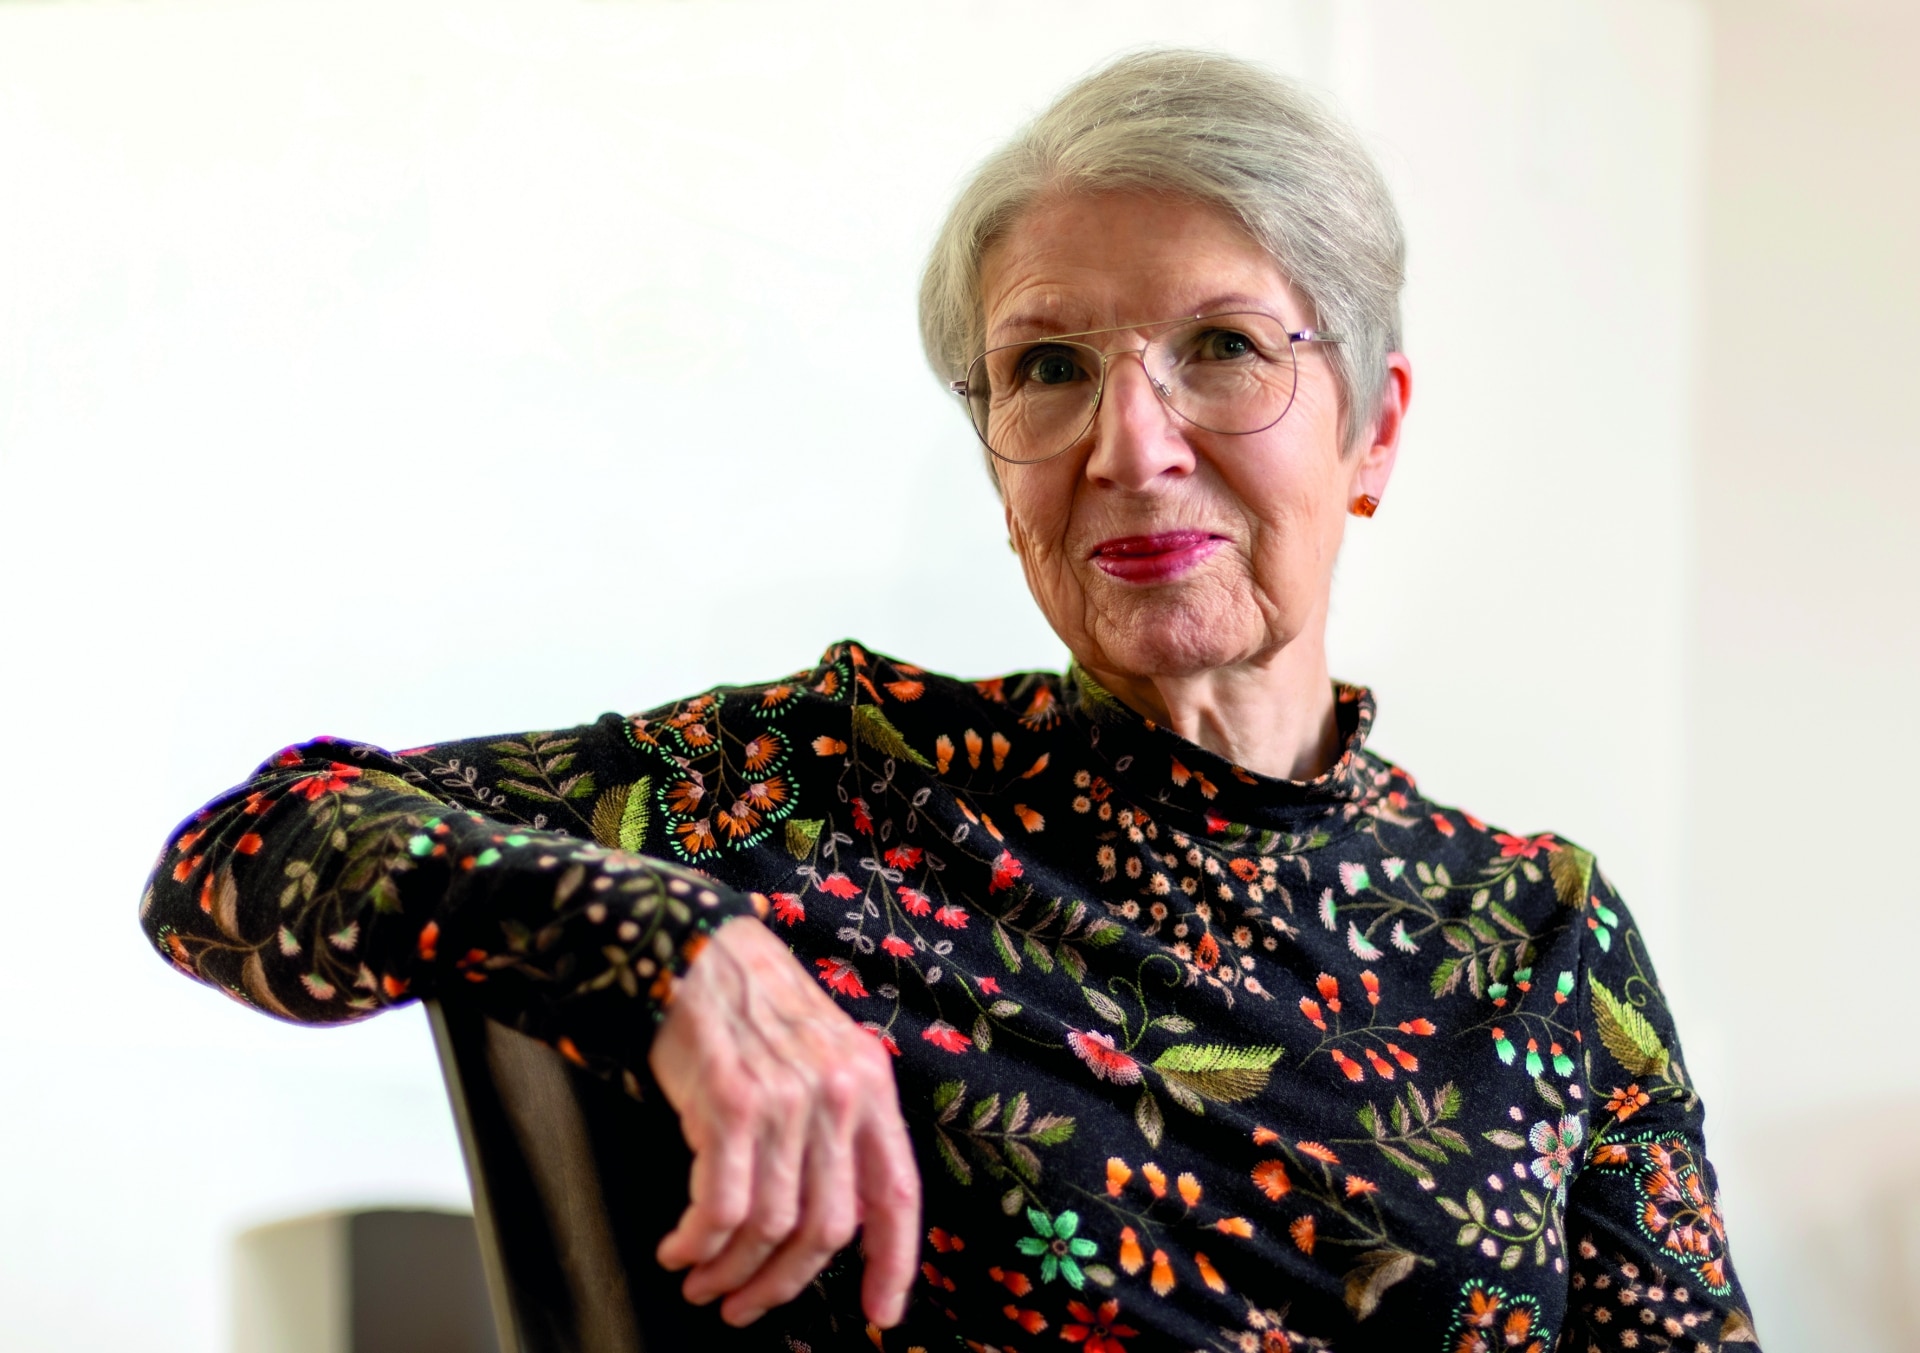 Barbara Frischmuth